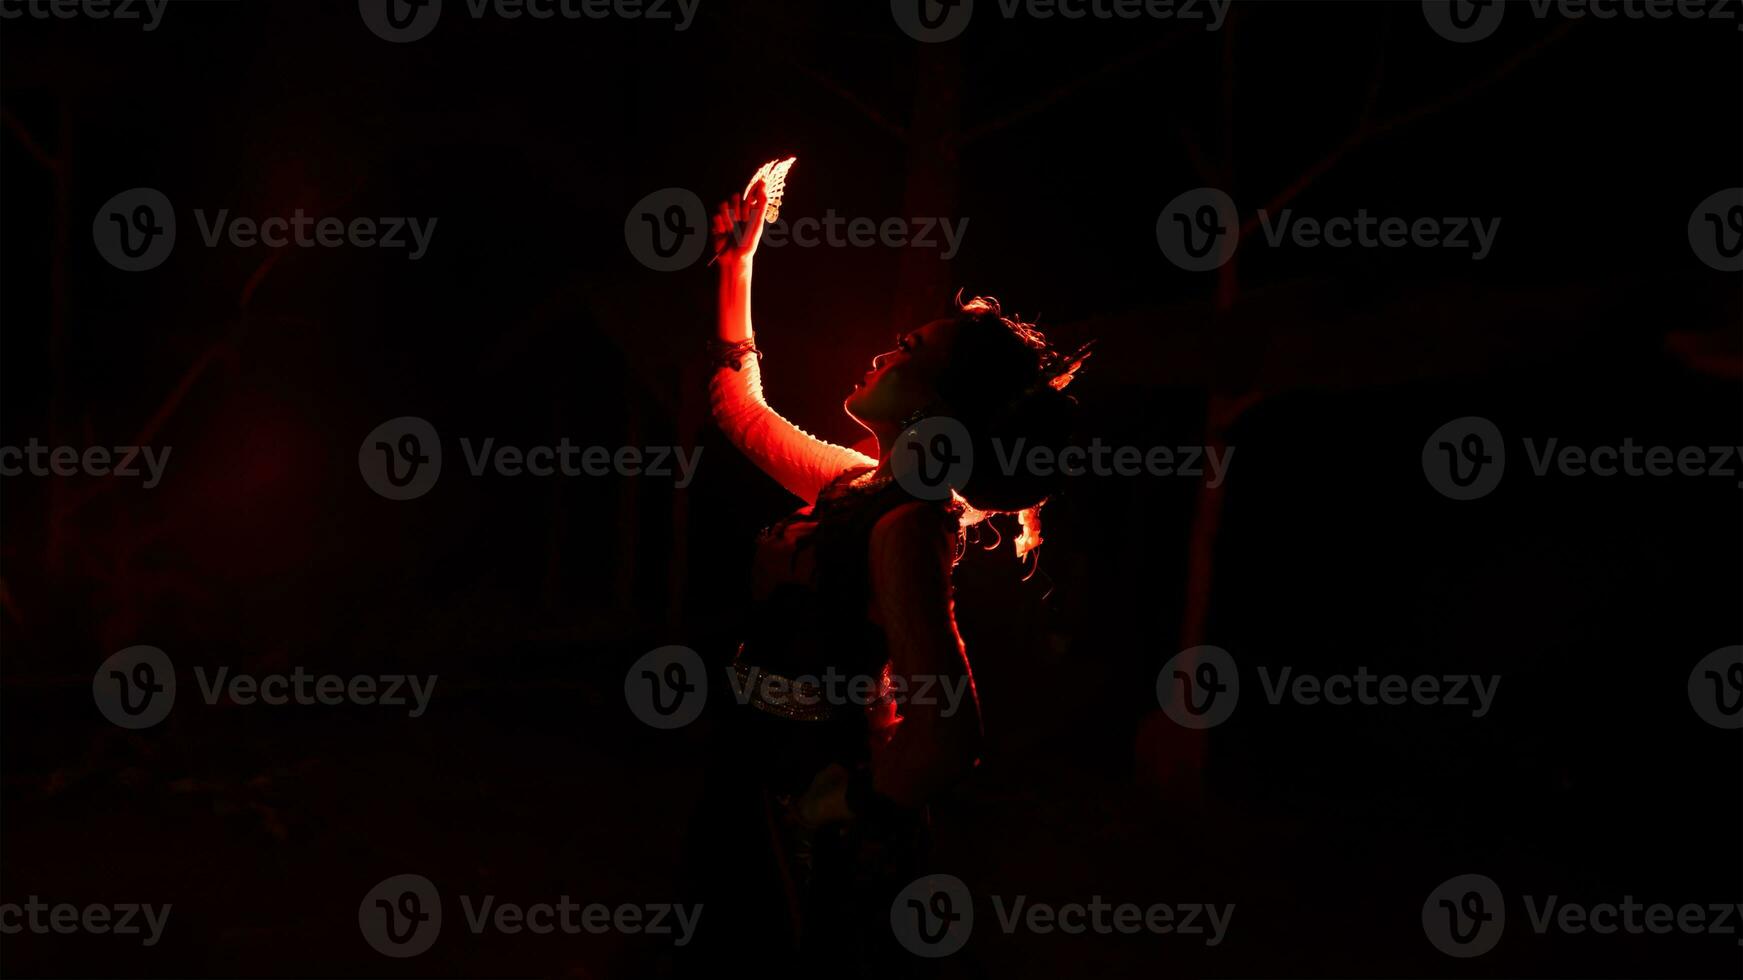 silhouet van een vrouw danser Holding sieraden in de midden- van de stilte van de nacht met rood licht foto